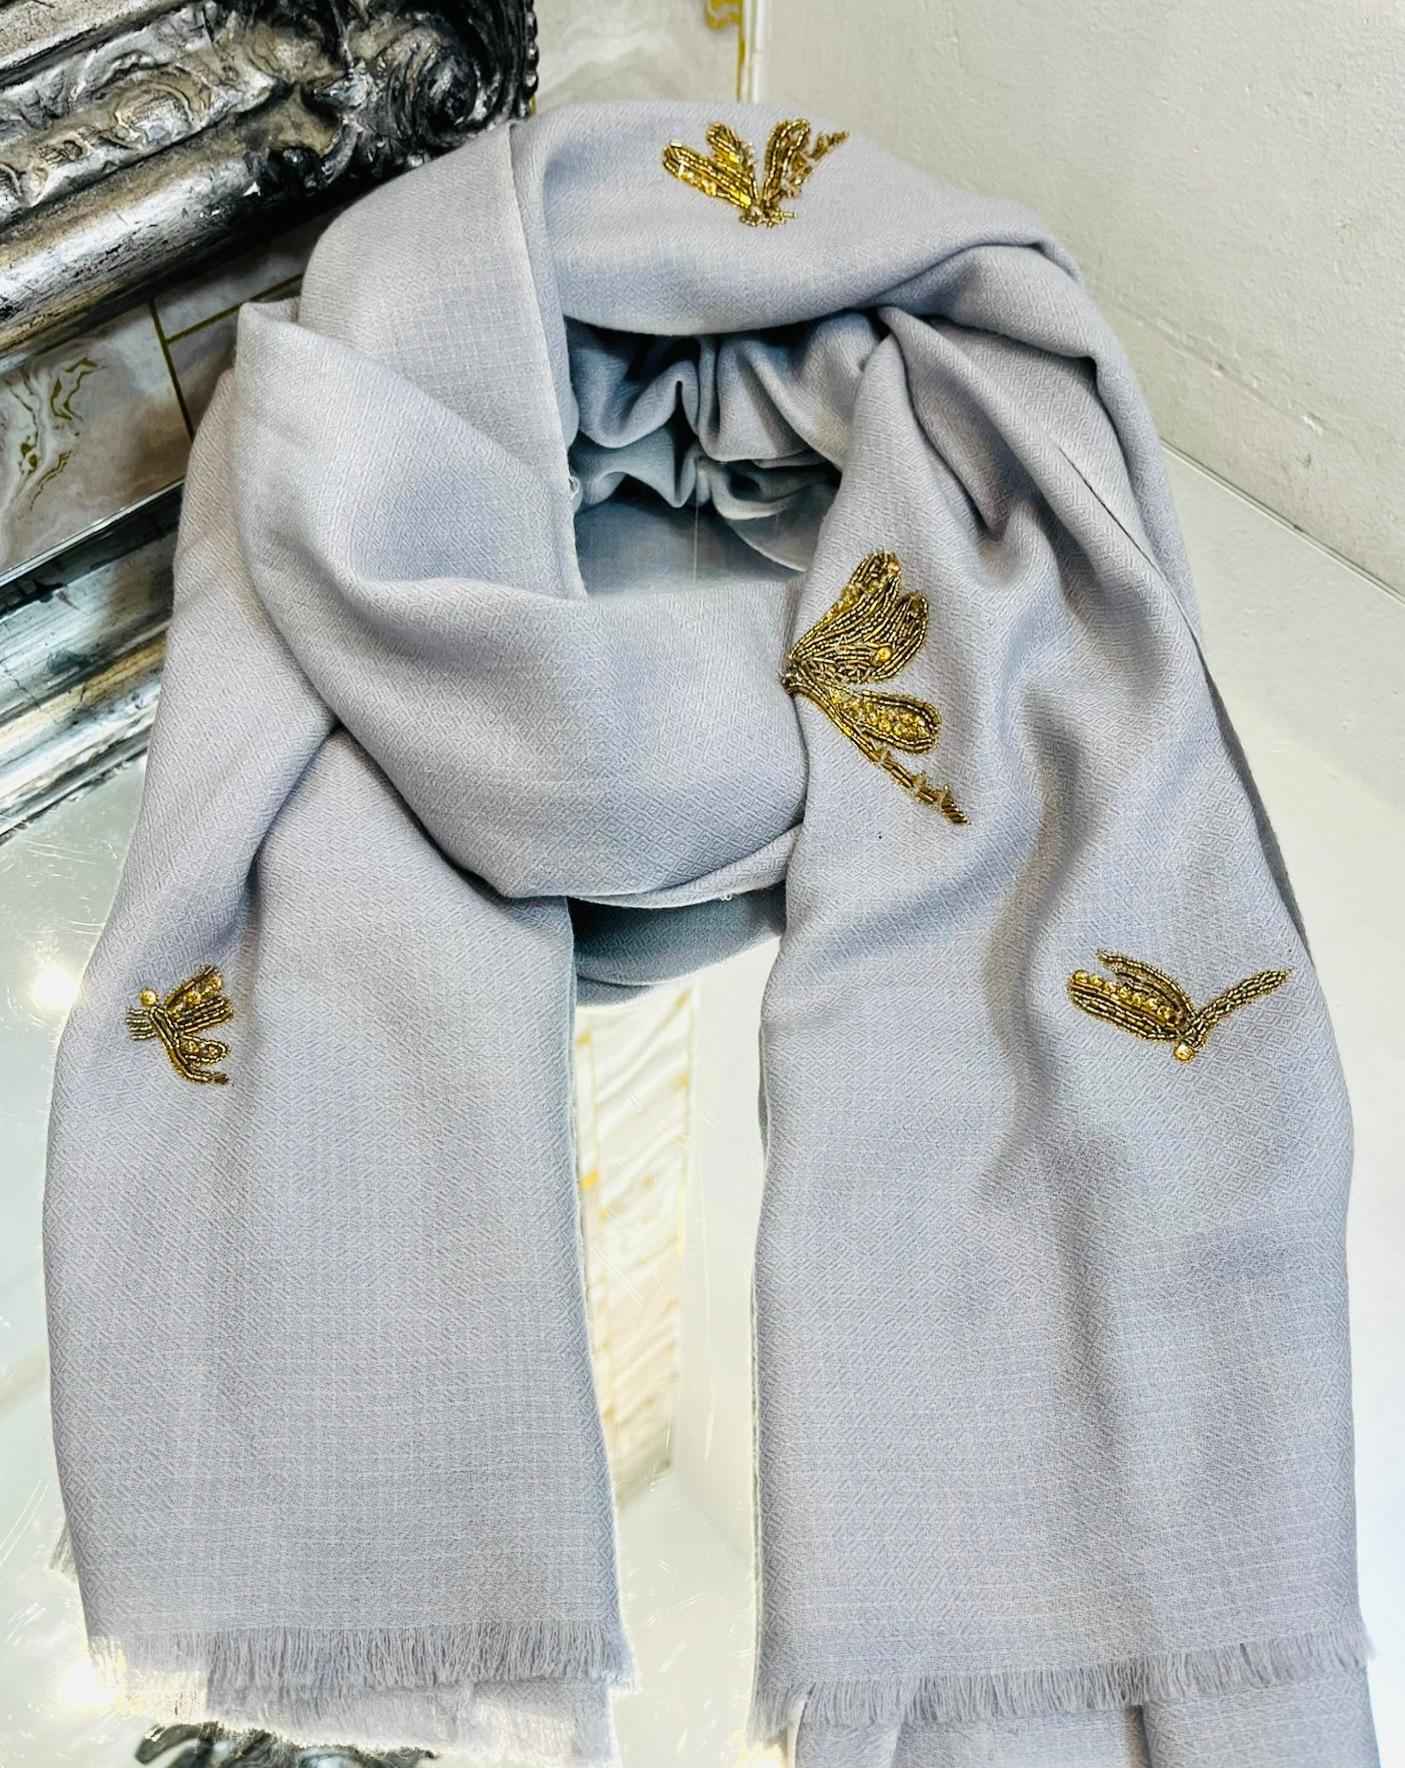 Écharpe en laine mérinos avec libellule perlée de Janavi

Écharpe grise fabriquée à la main et ornée de motifs de libellules en perles dorées et brunes.

Il est doté de bordures frangées et d'une texture douce et brossée.

Taille - 198cm x